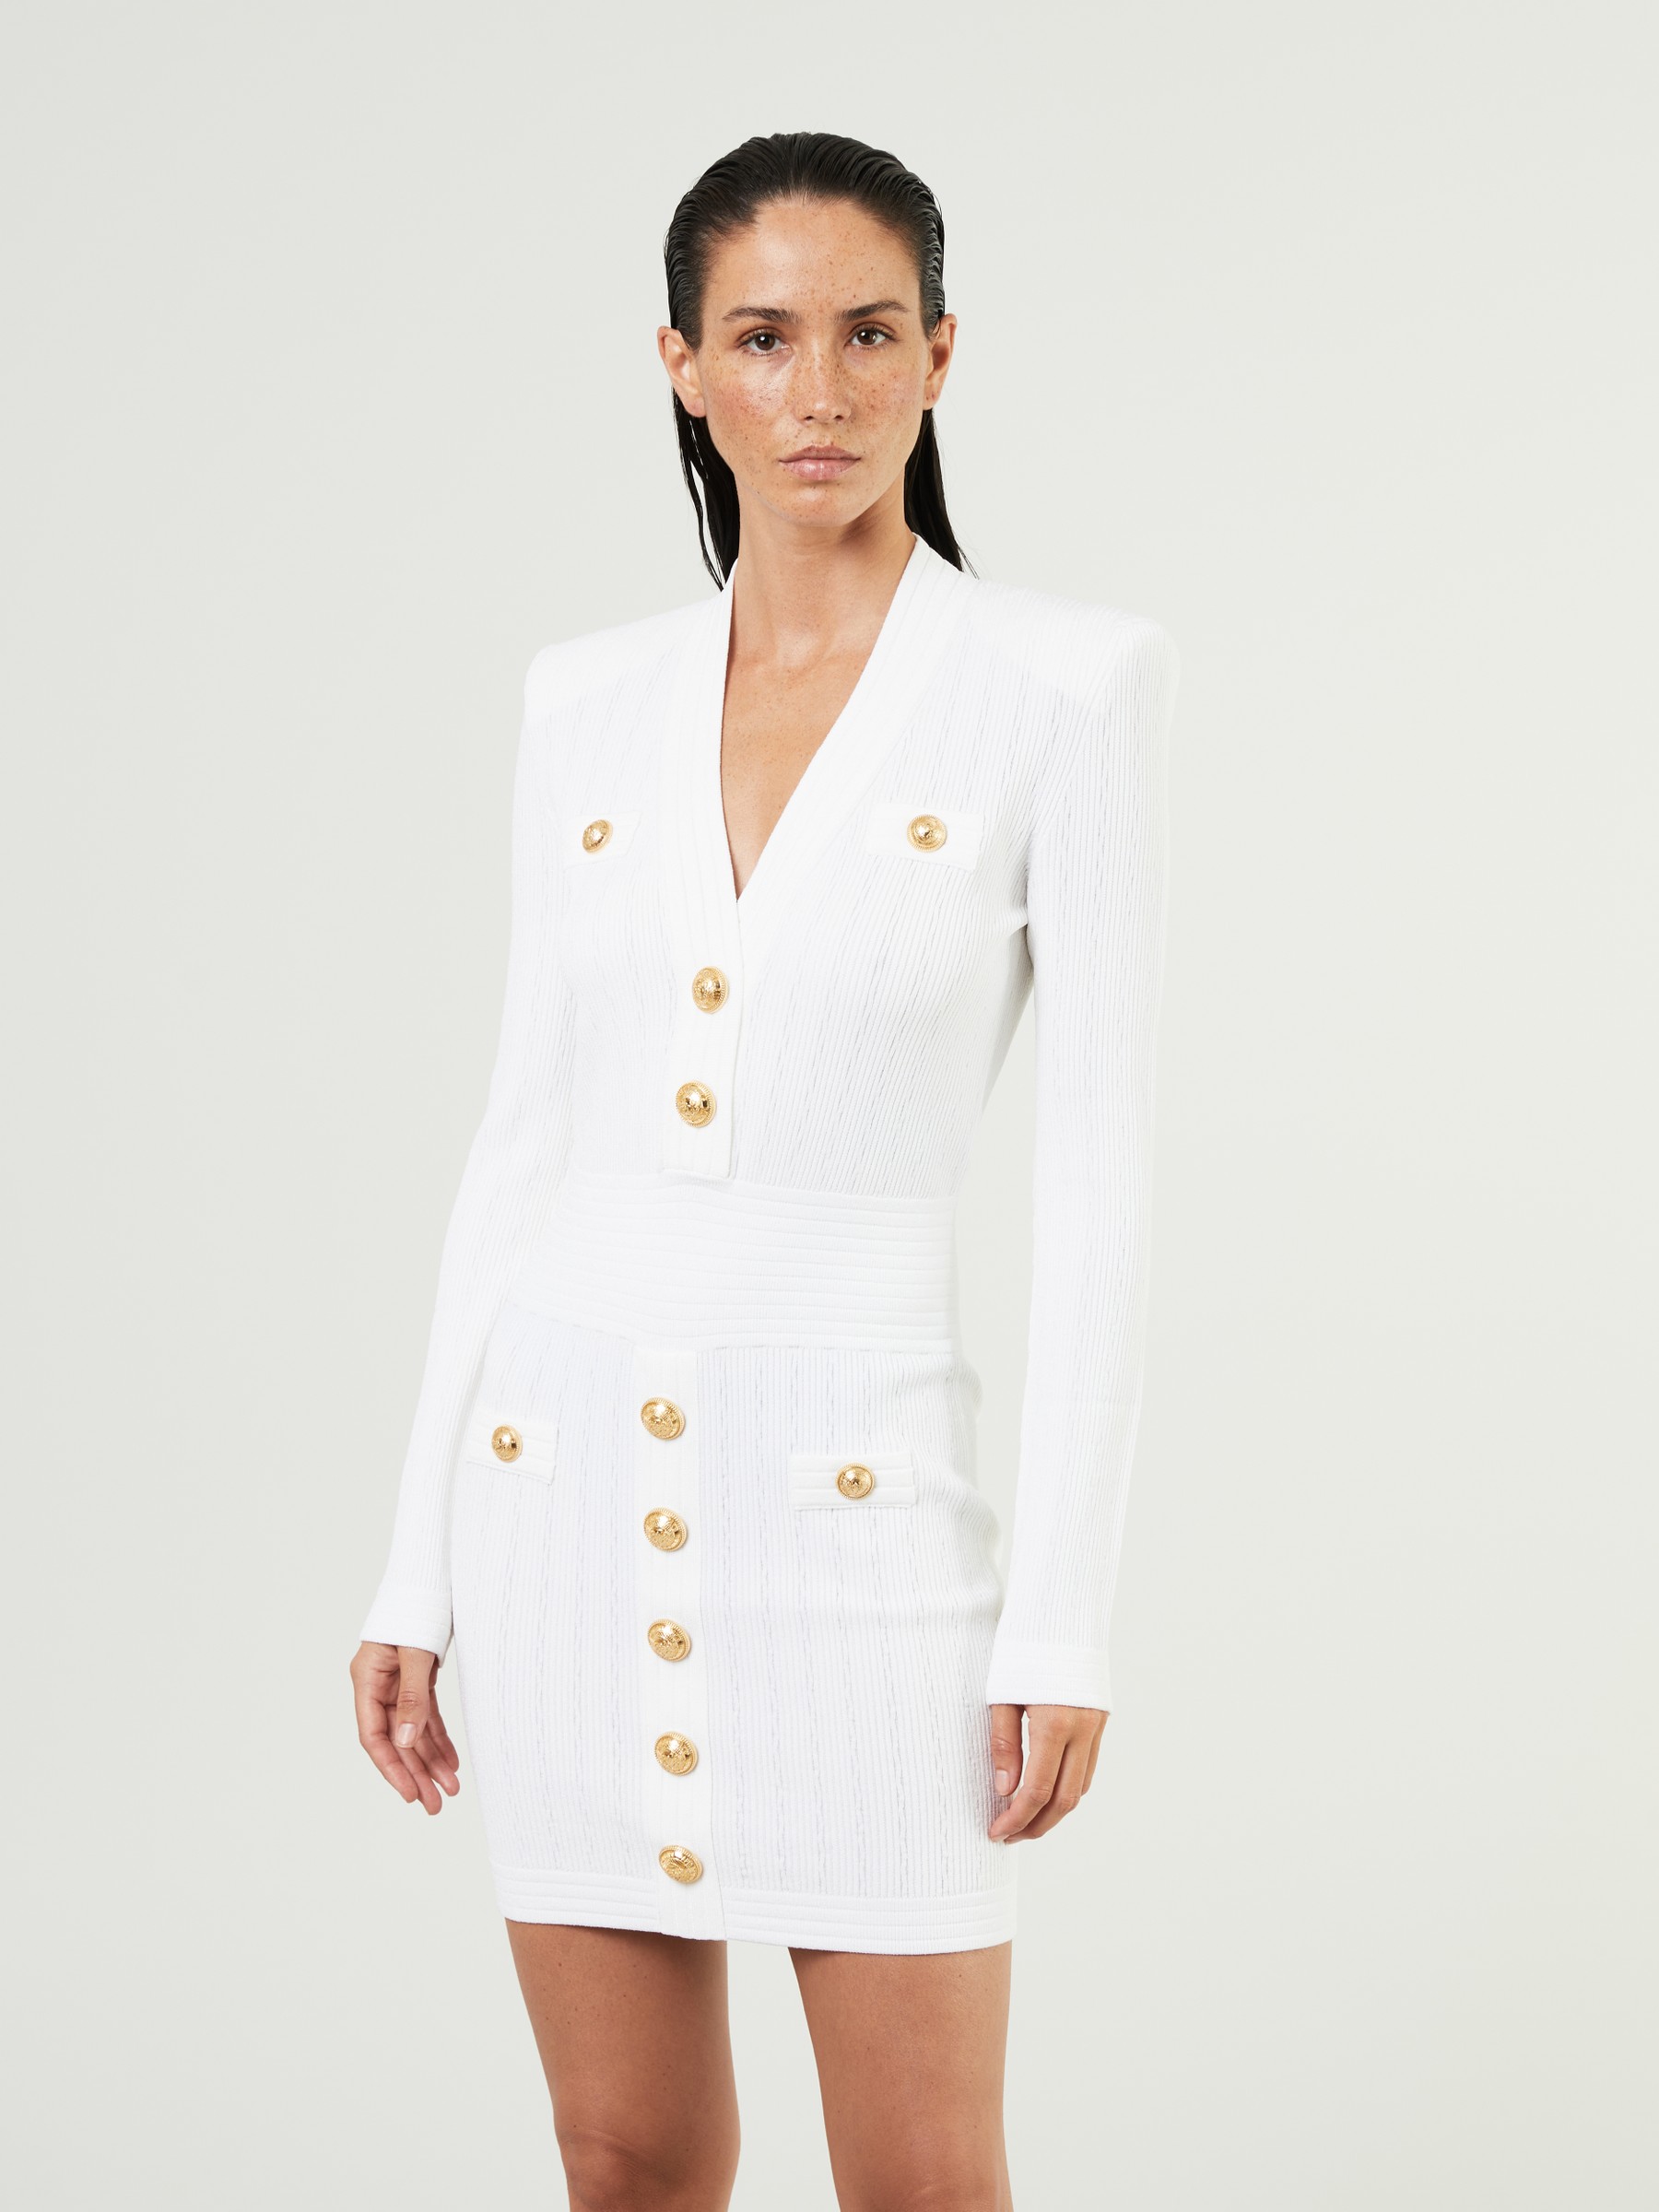 BALMAIN dress white | Cashmere & Knits